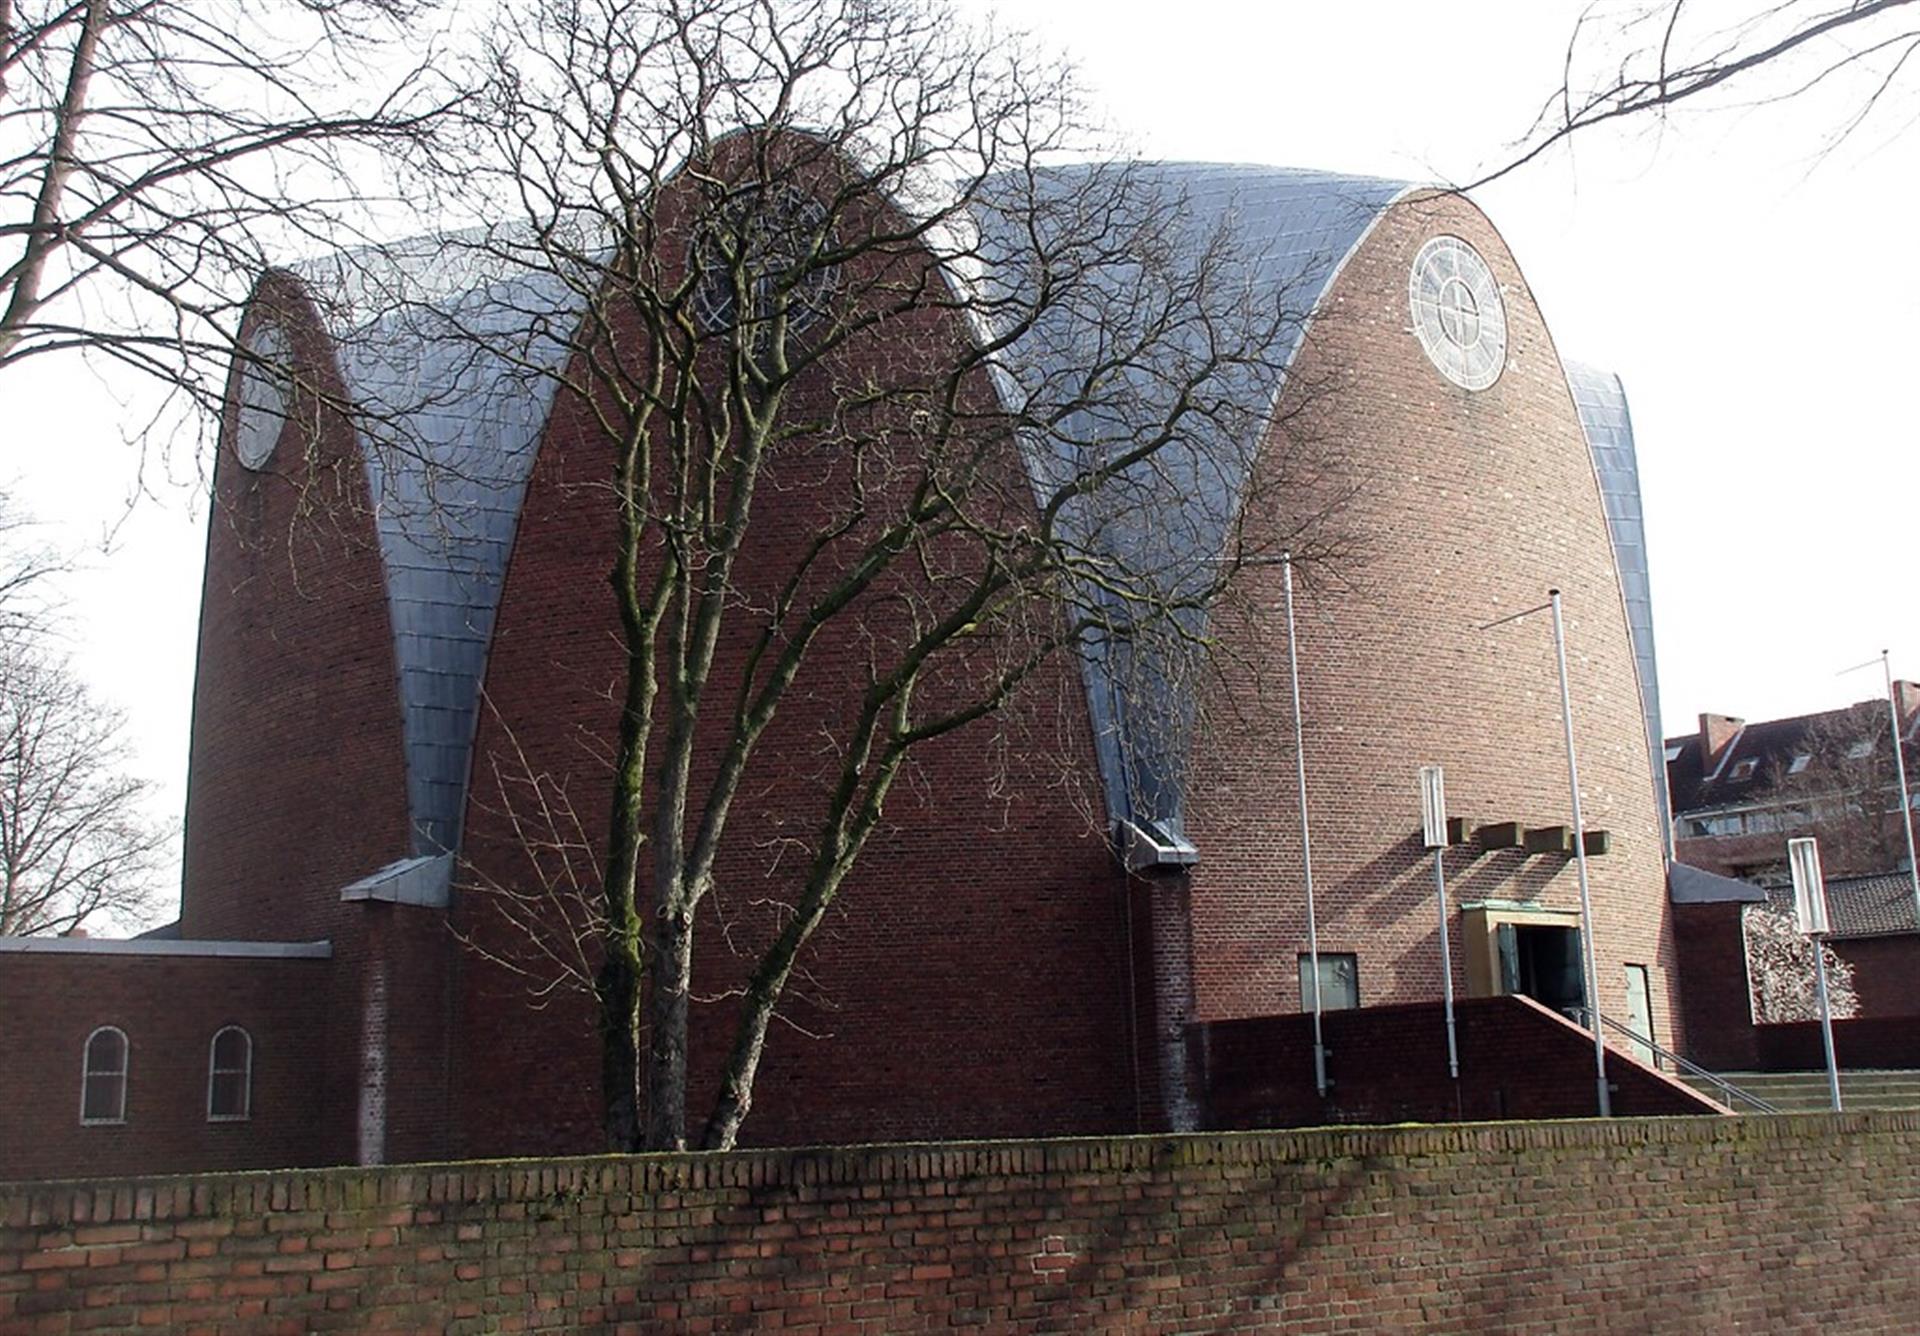 Der Zentralbau der katholischen Pfarrkirche St. Engelbert in Köln-Riehl, wegen der Dachform auch "Zitronenpresse" genannt (2020). &copy; Knöchel, Franz-Josef / Landschaftsverband Rheinland, CC-BY